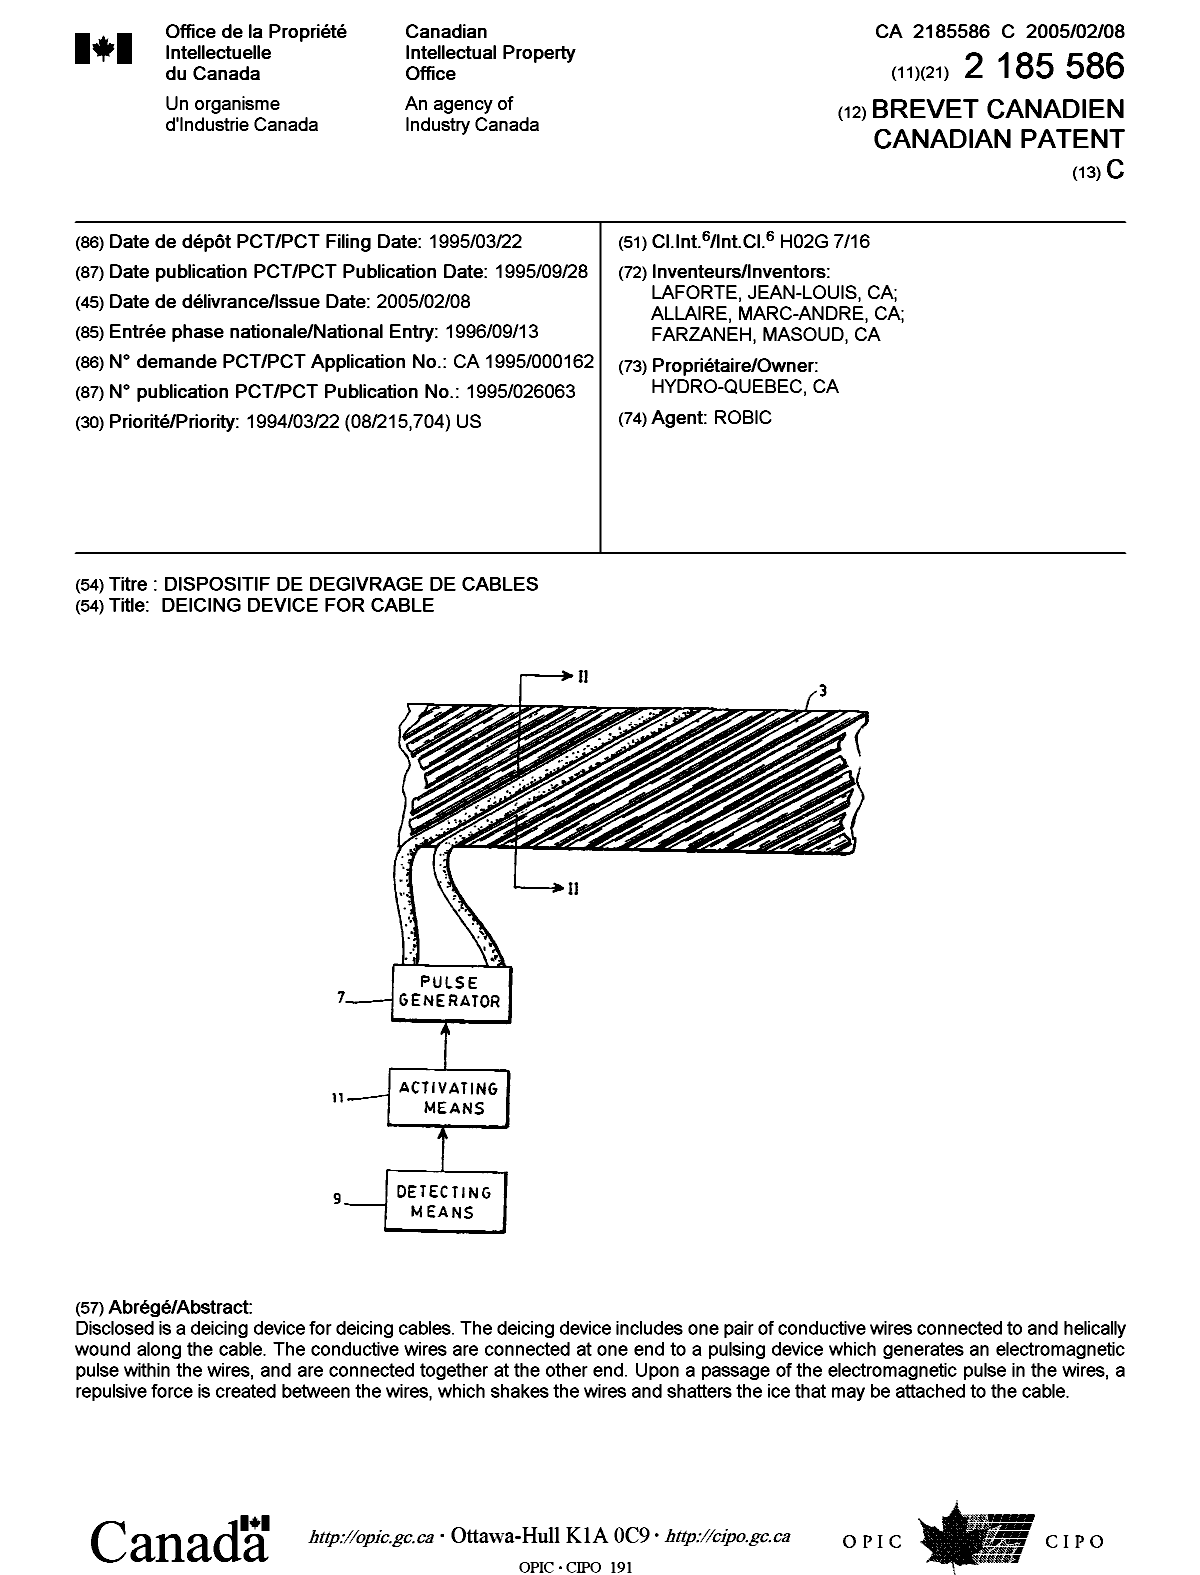 Document de brevet canadien 2185586. Page couverture 20041213. Image 1 de 1